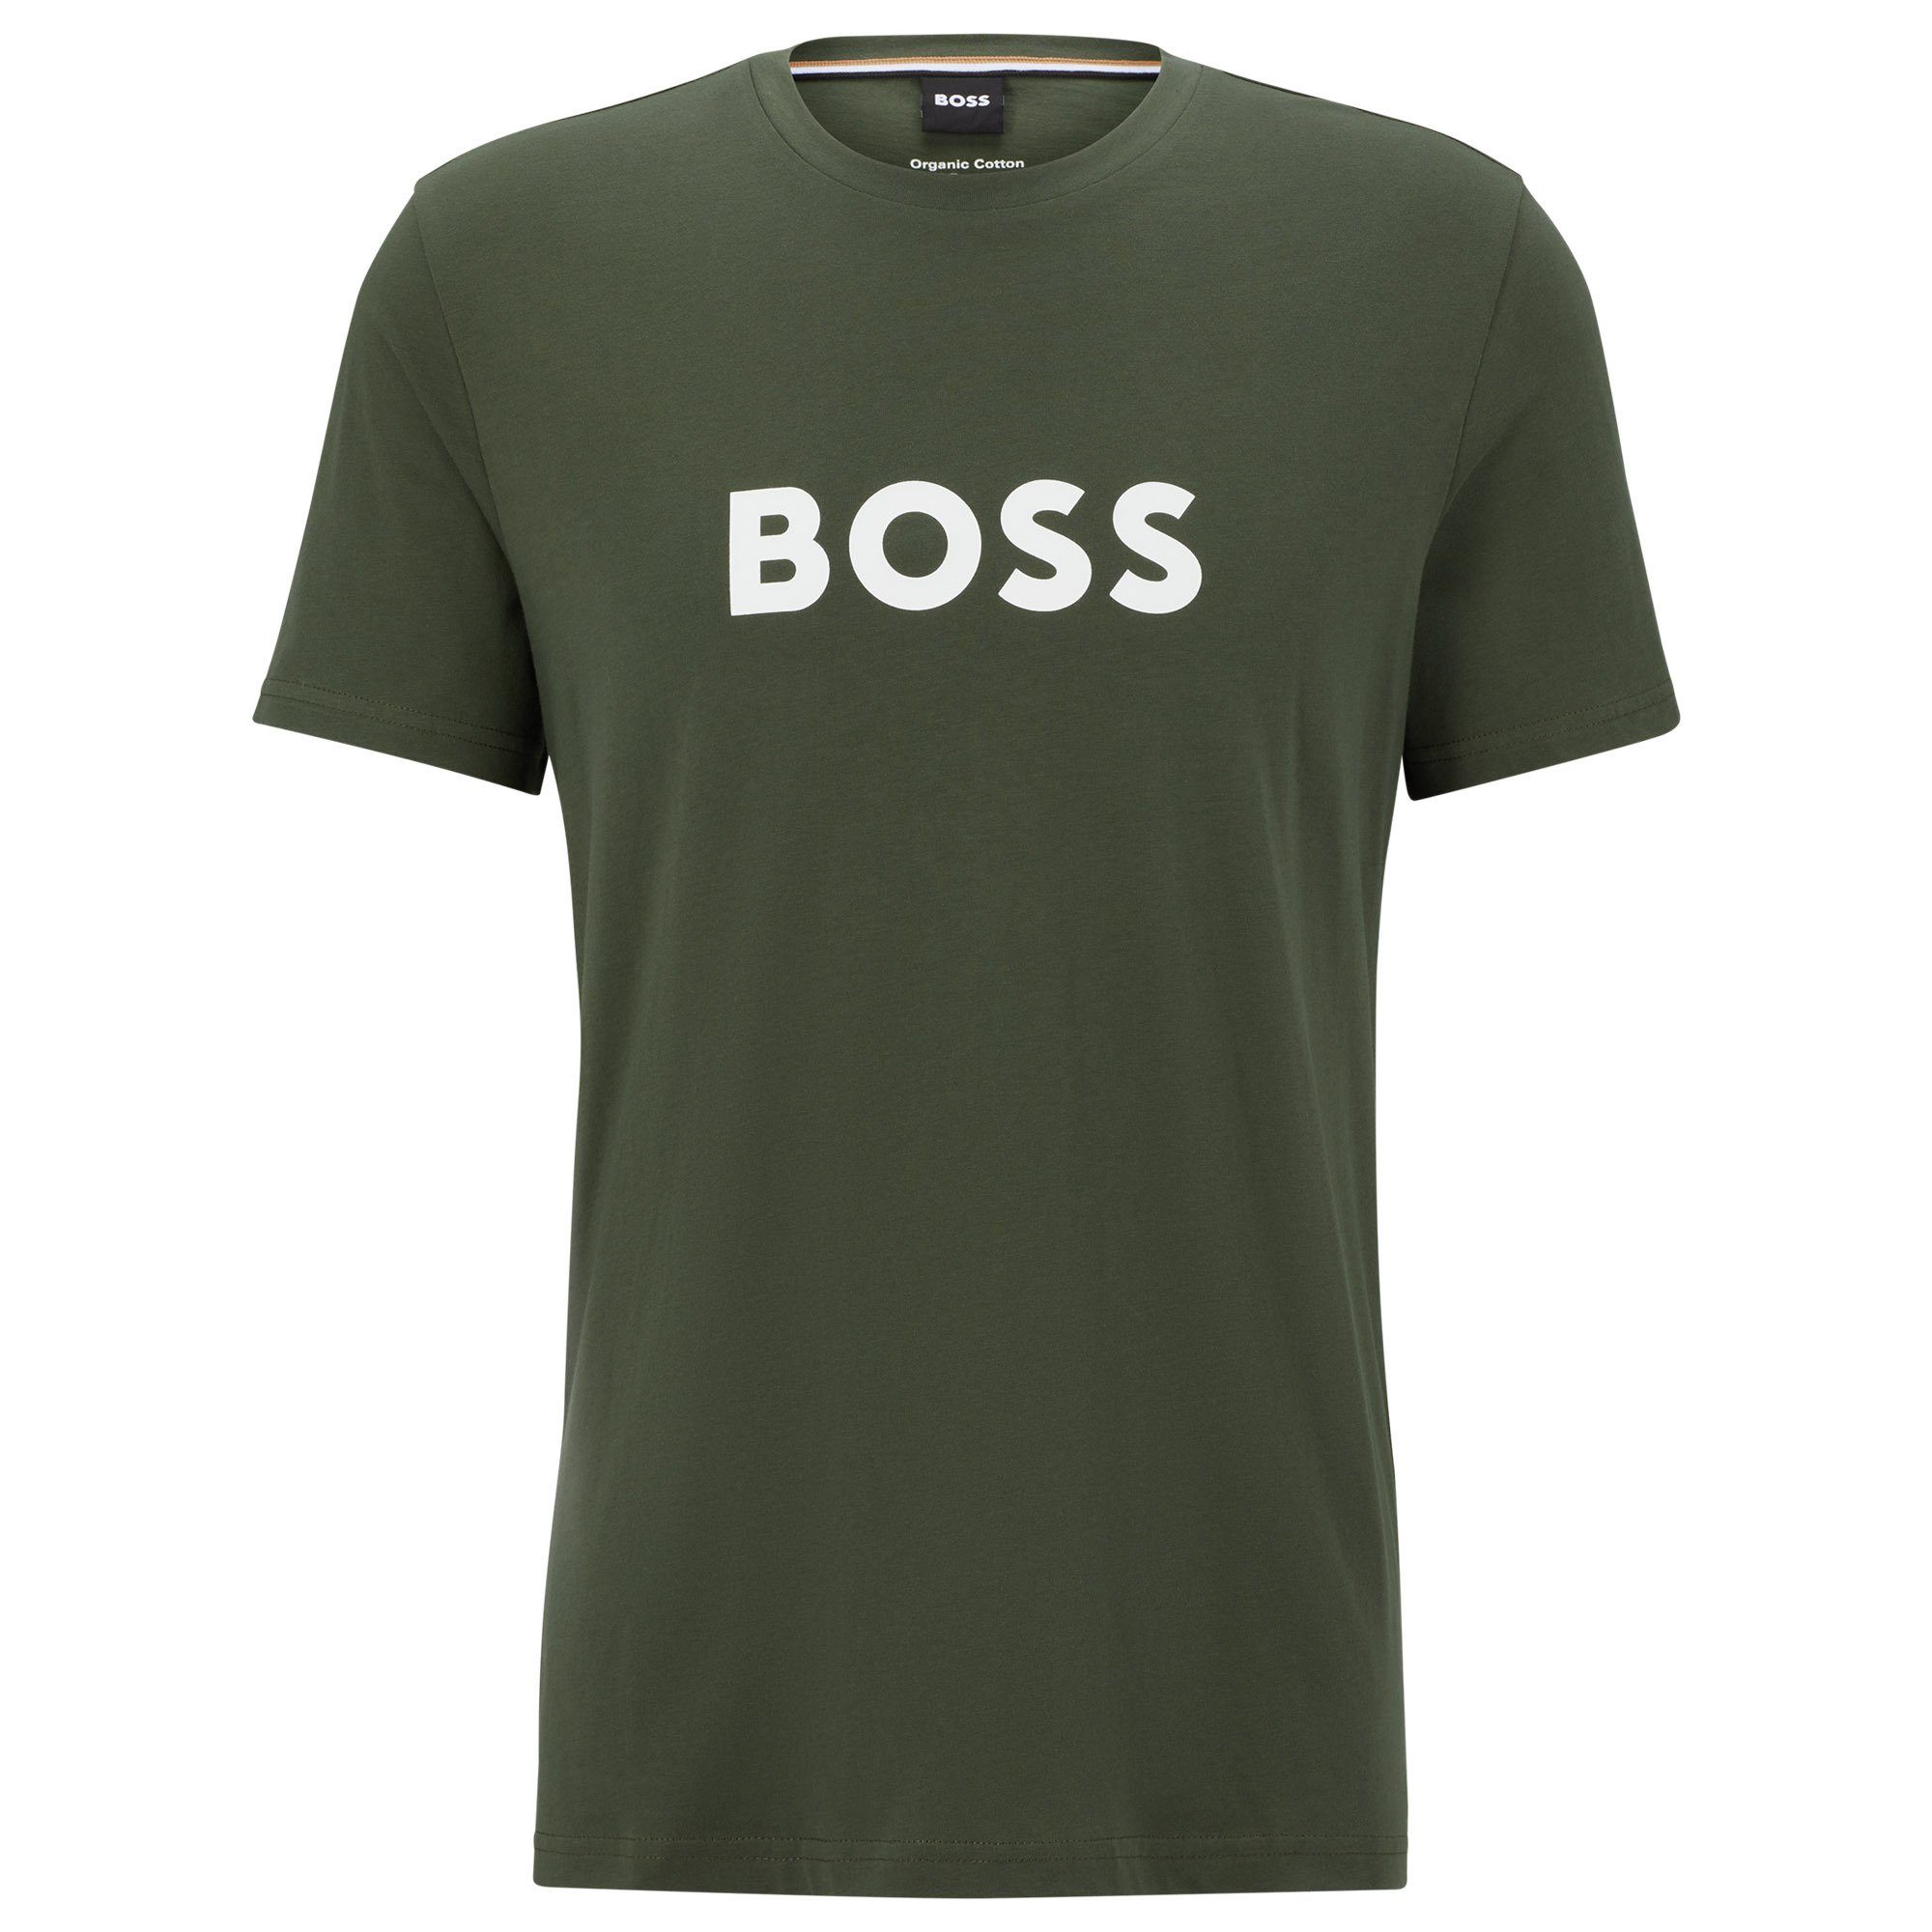 Kaufhaus BOSS T-Shirt Herren T-Shirt - RN, Dunkelgrün Kurzarm T-Shirt Rundhals